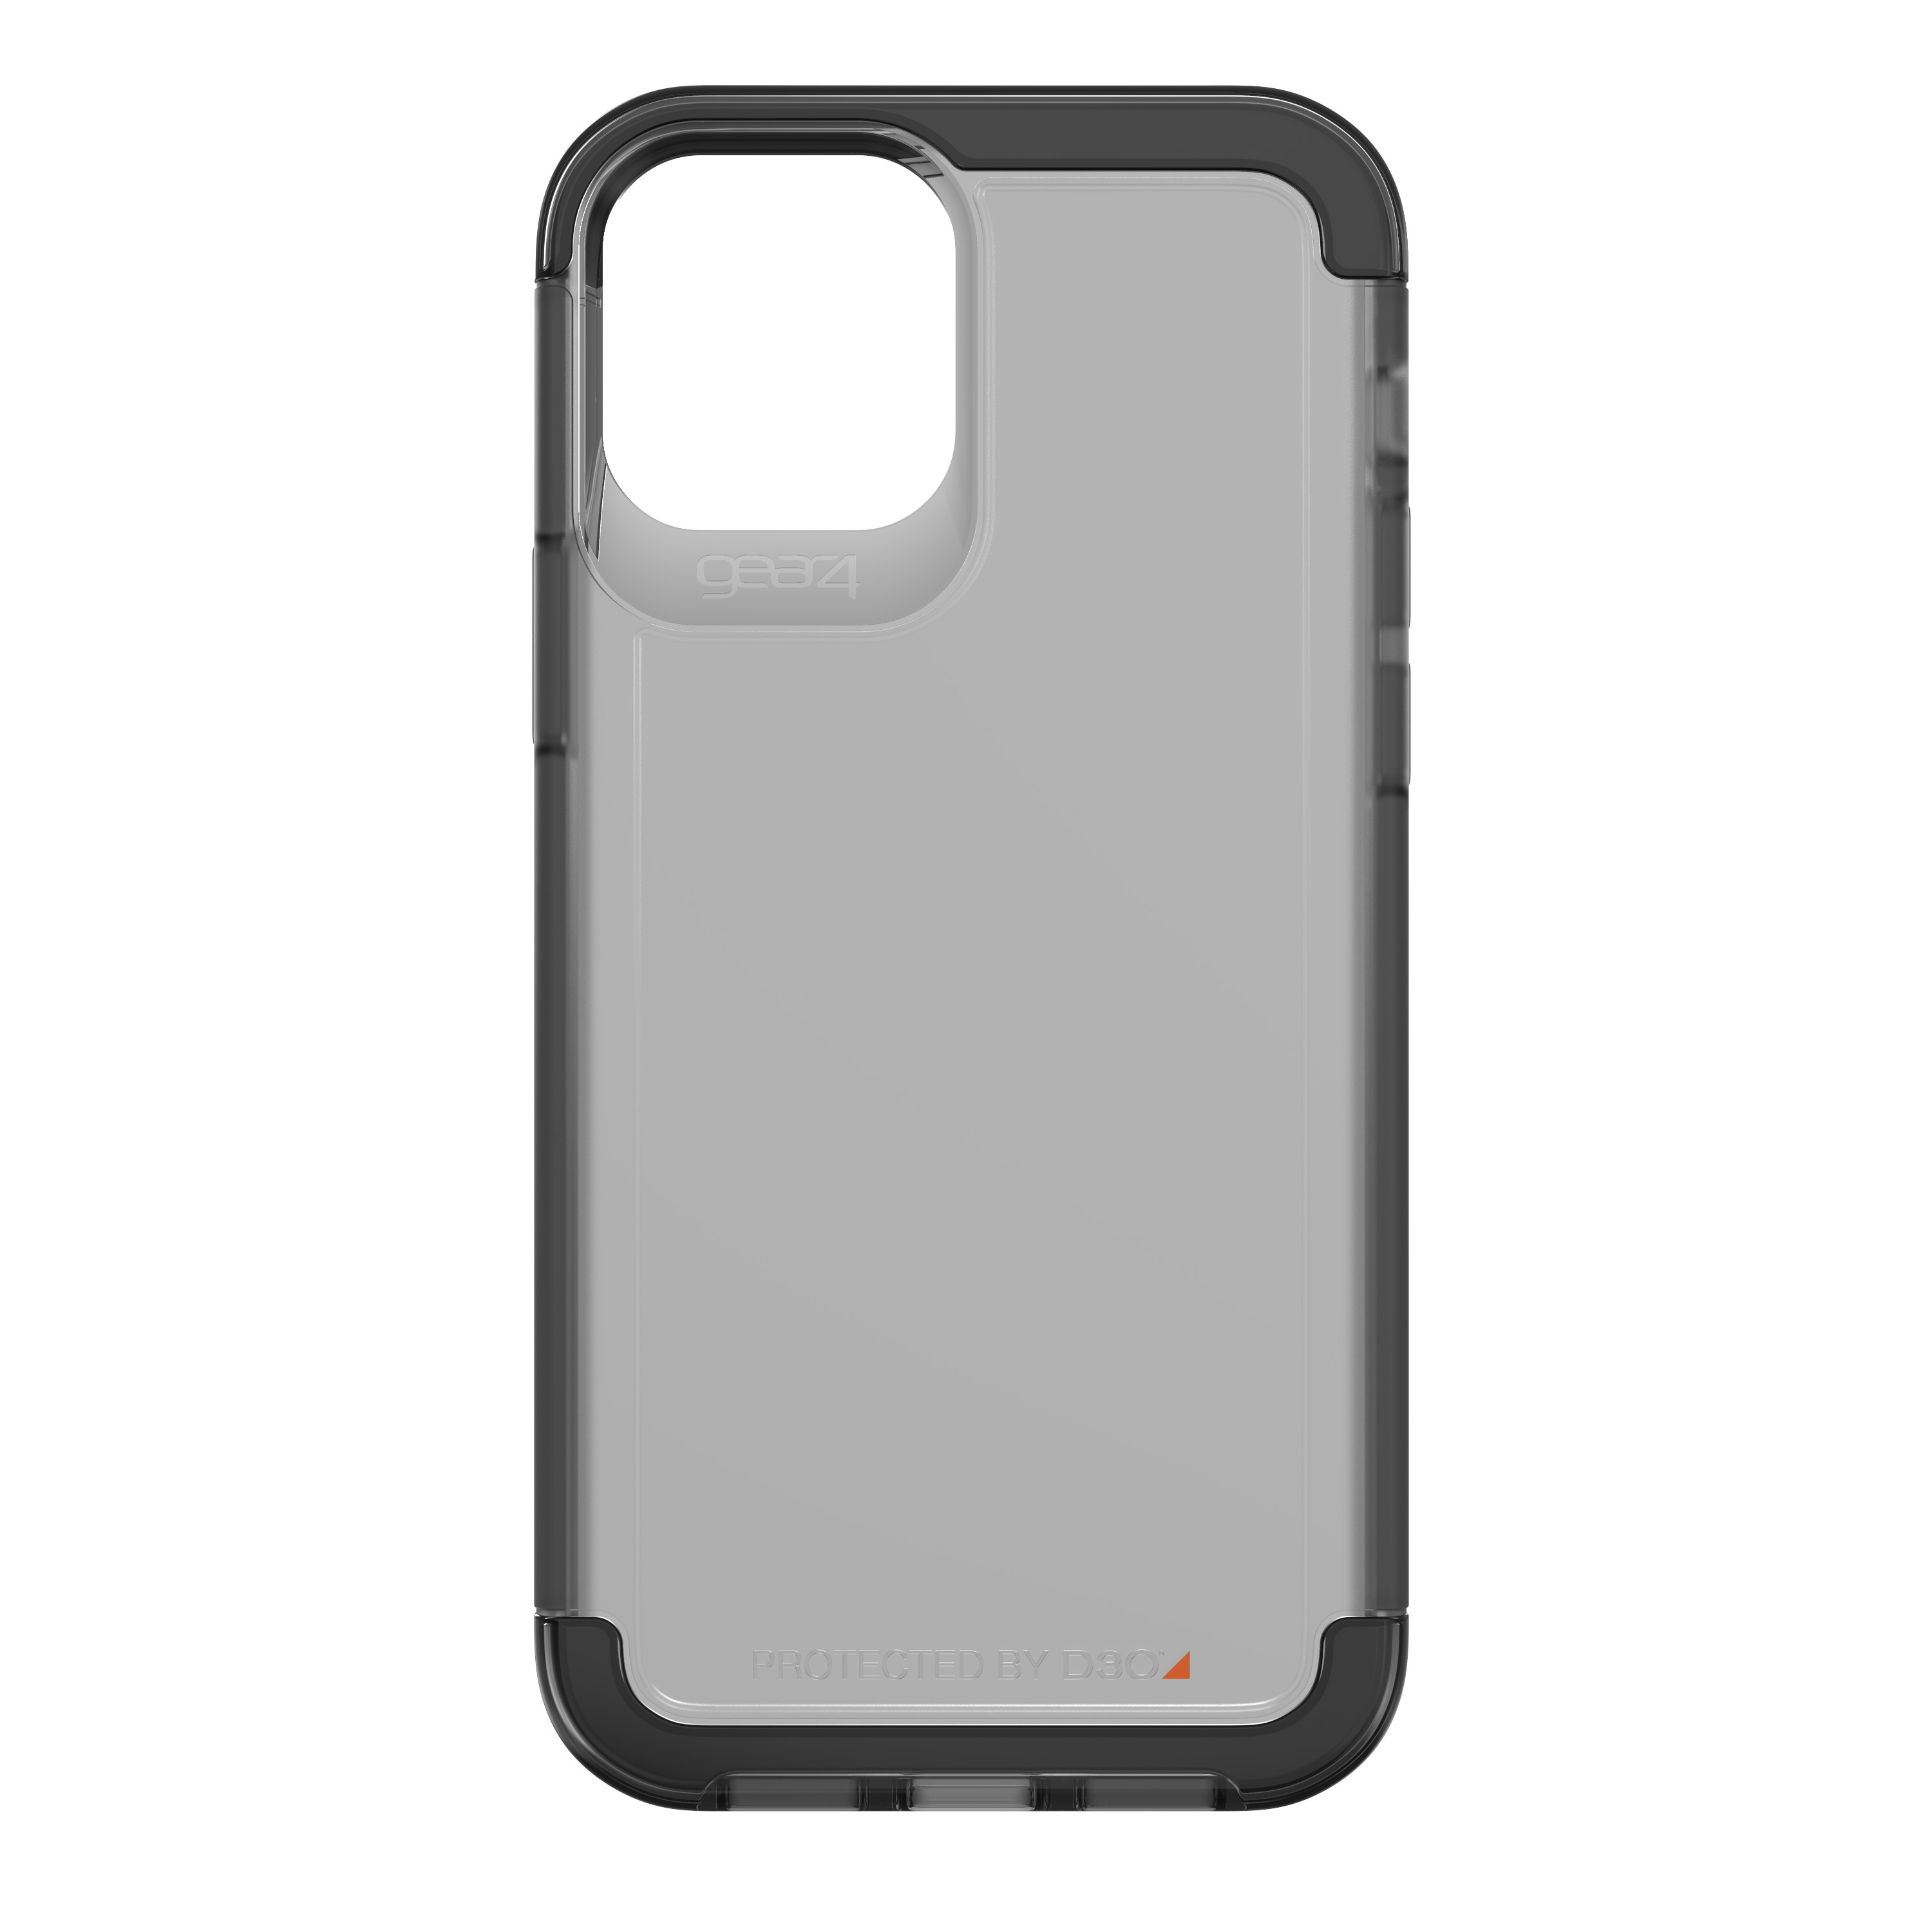 Ốp lưng GEAR4 D3O Wembley Palette iPhone - Công nghệ chống sốc độc quyền D3O, kháng khuẩn, tương thích tốt với sóng 5G - Hàng chính hãng